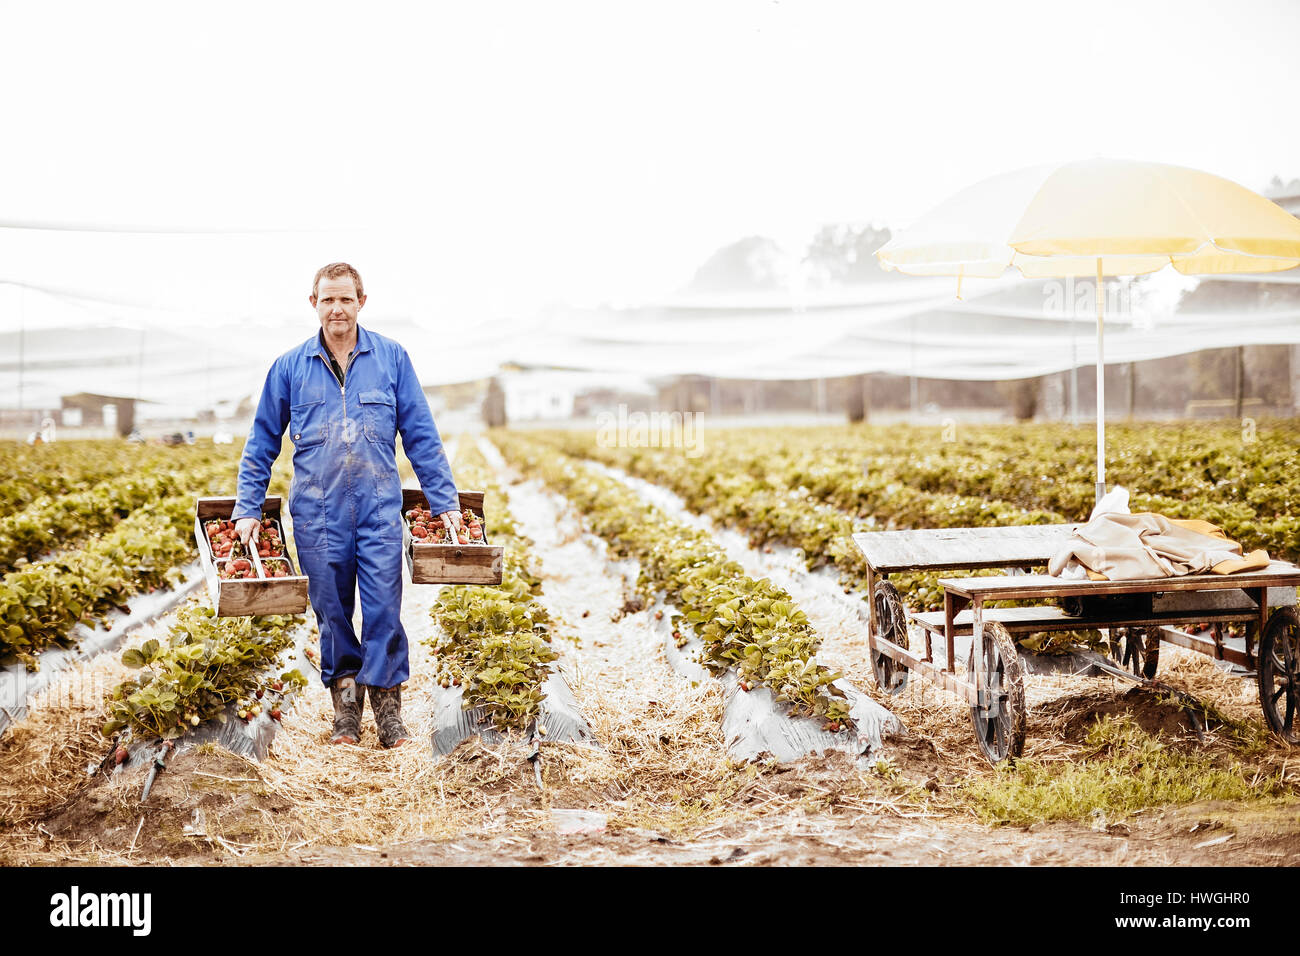 Erdbeer-Bauern Carring Bastkörbe zur Erntezeit Stockfoto